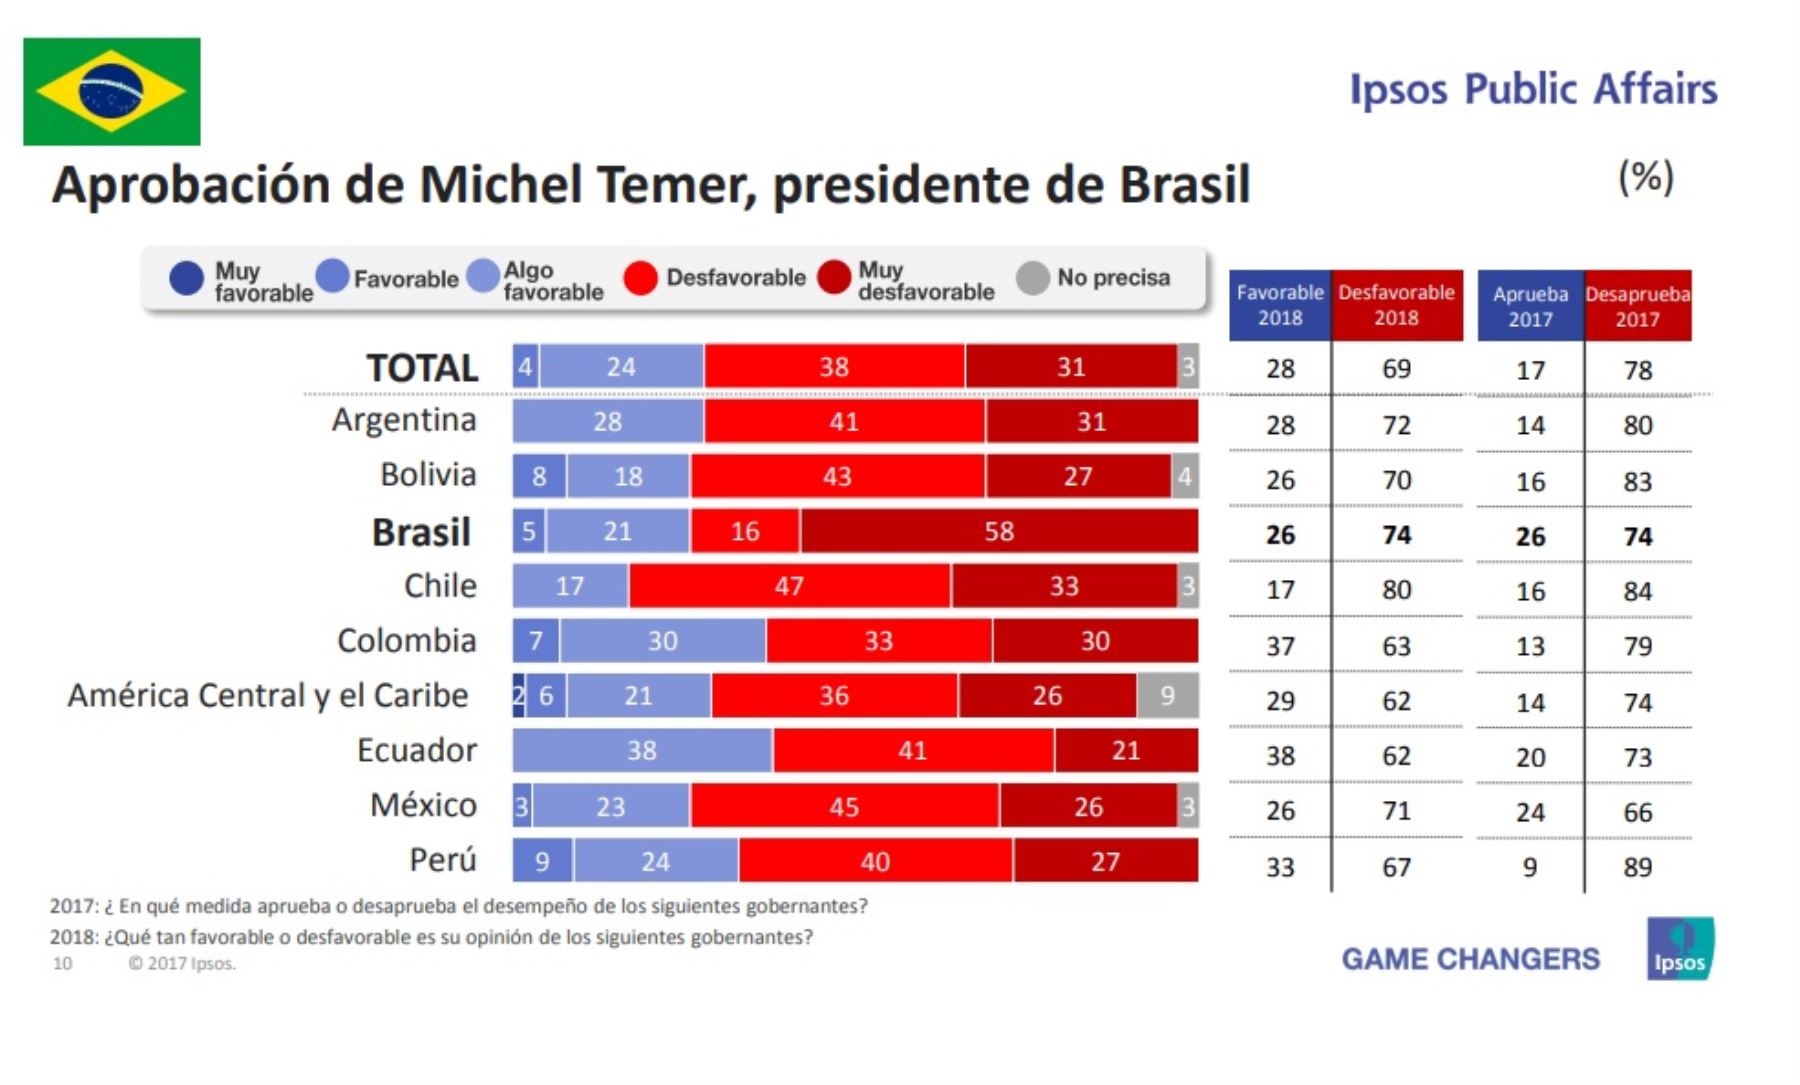 Aprobación del presidente de Brasil, Michel Temer. Encuesta Ipsos Public Affairs 2018.